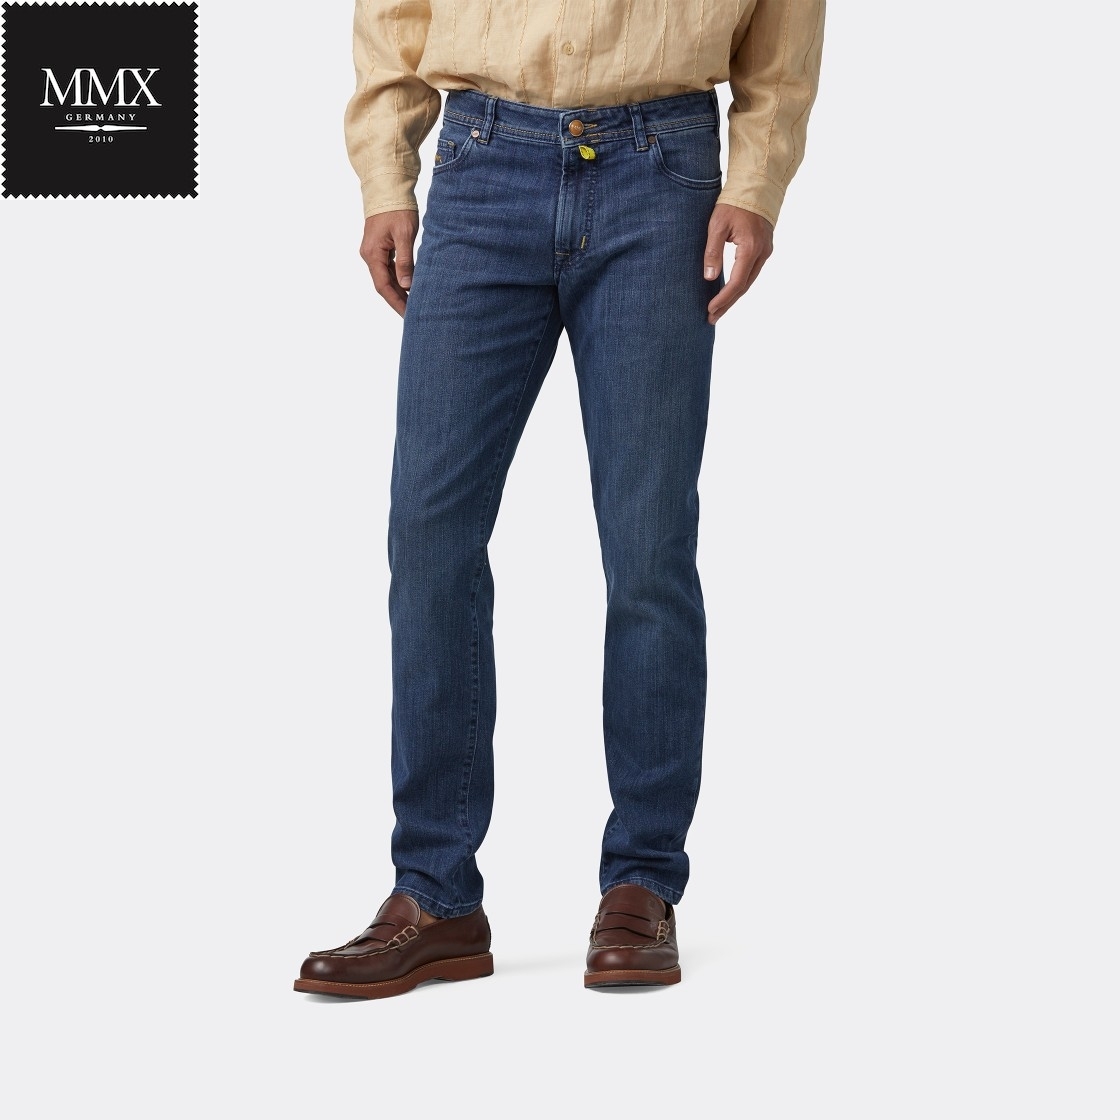 Men's Jeans Stone Washed MMX Fairtrade Cotton - Denim Stretch